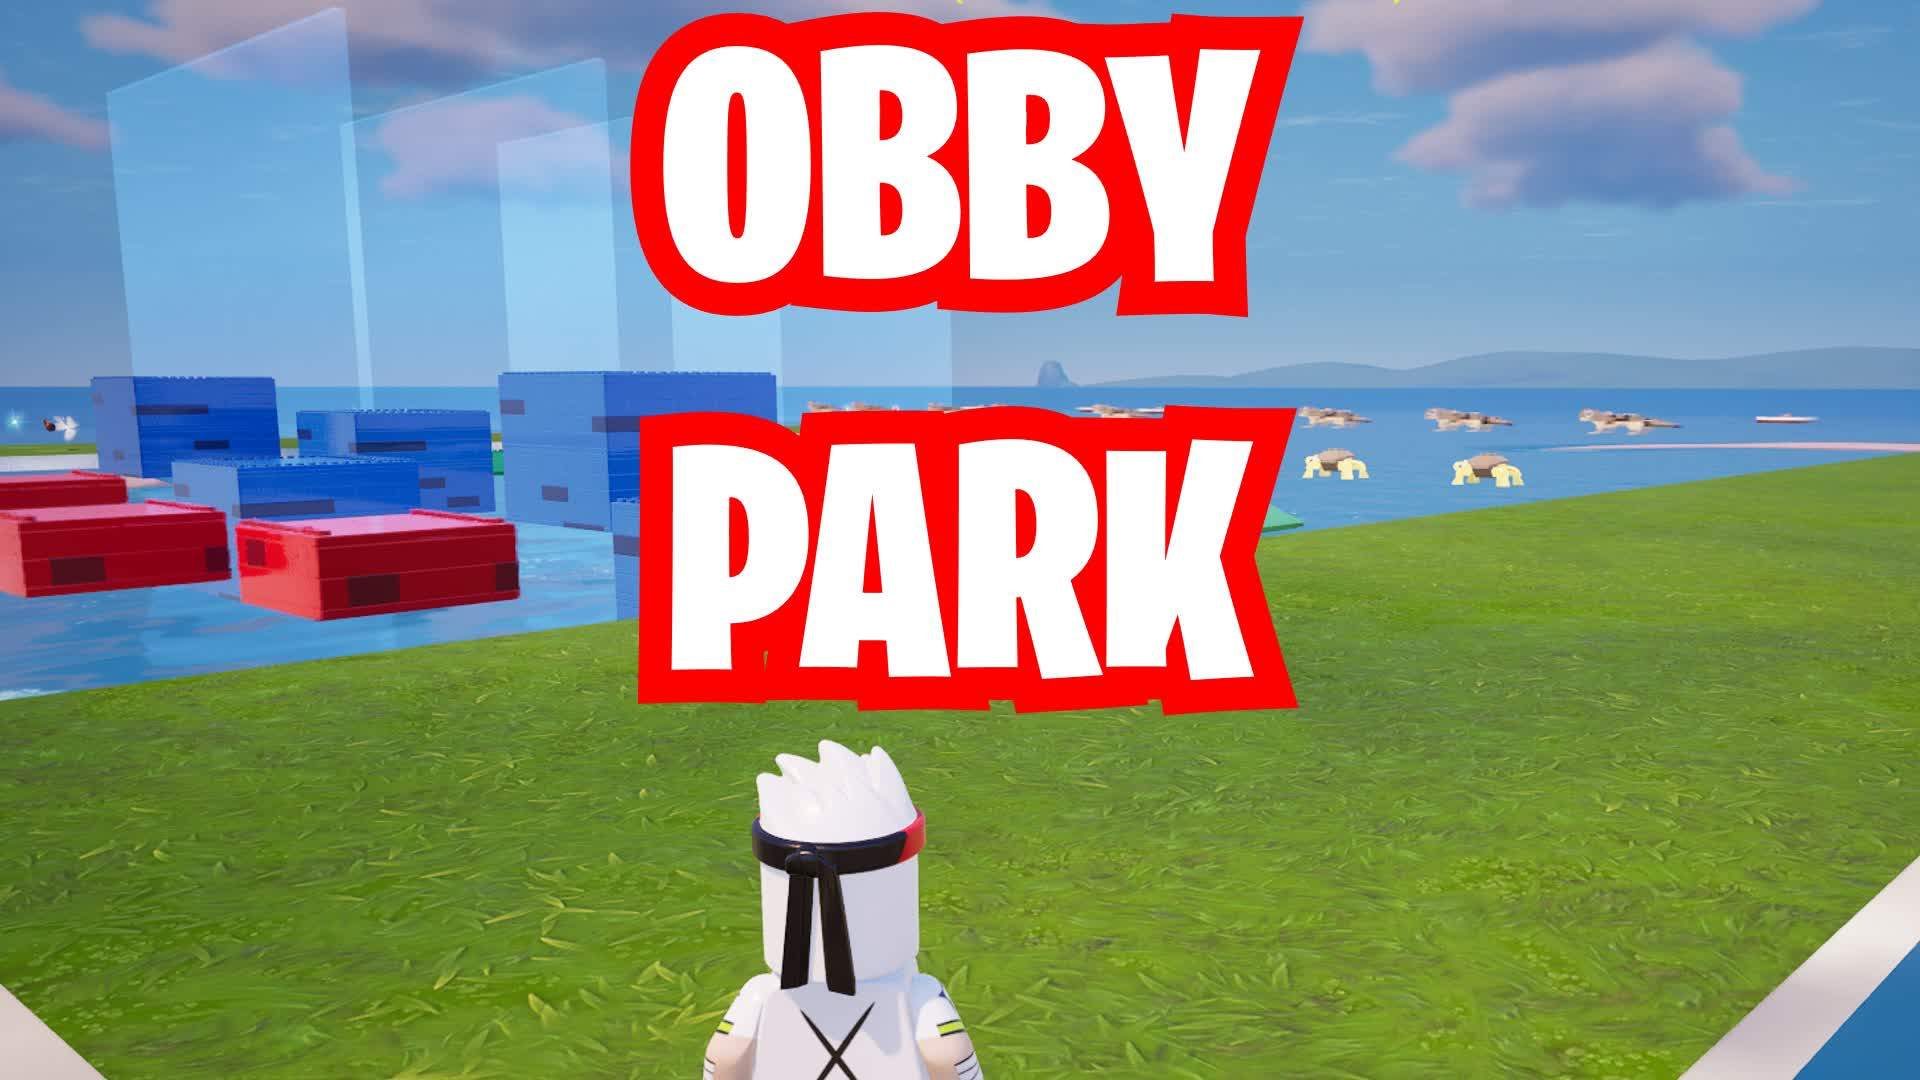 Obby Park